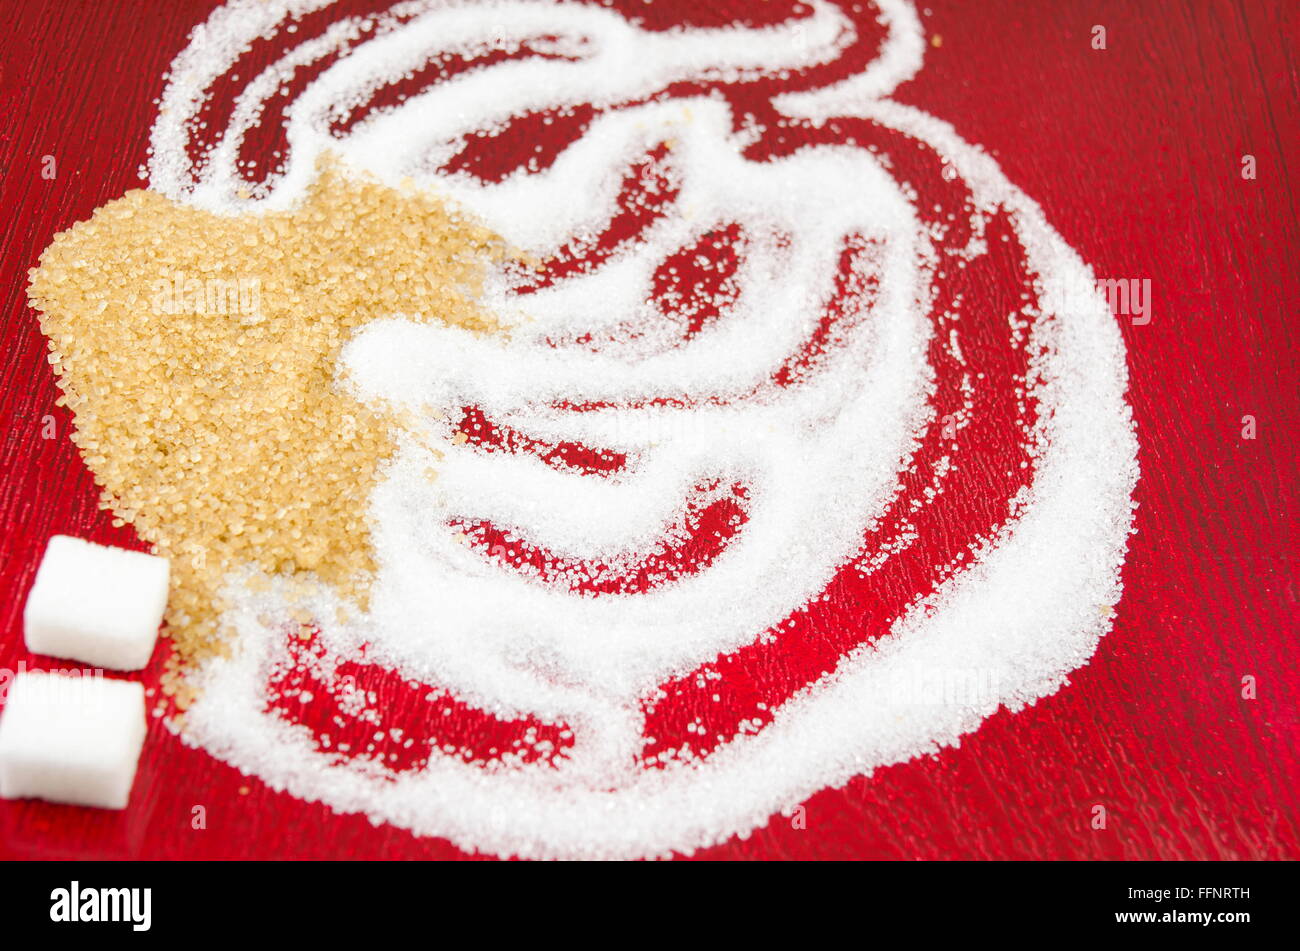 Bianco e zucchero di canna forme su sfondo rosso Foto Stock